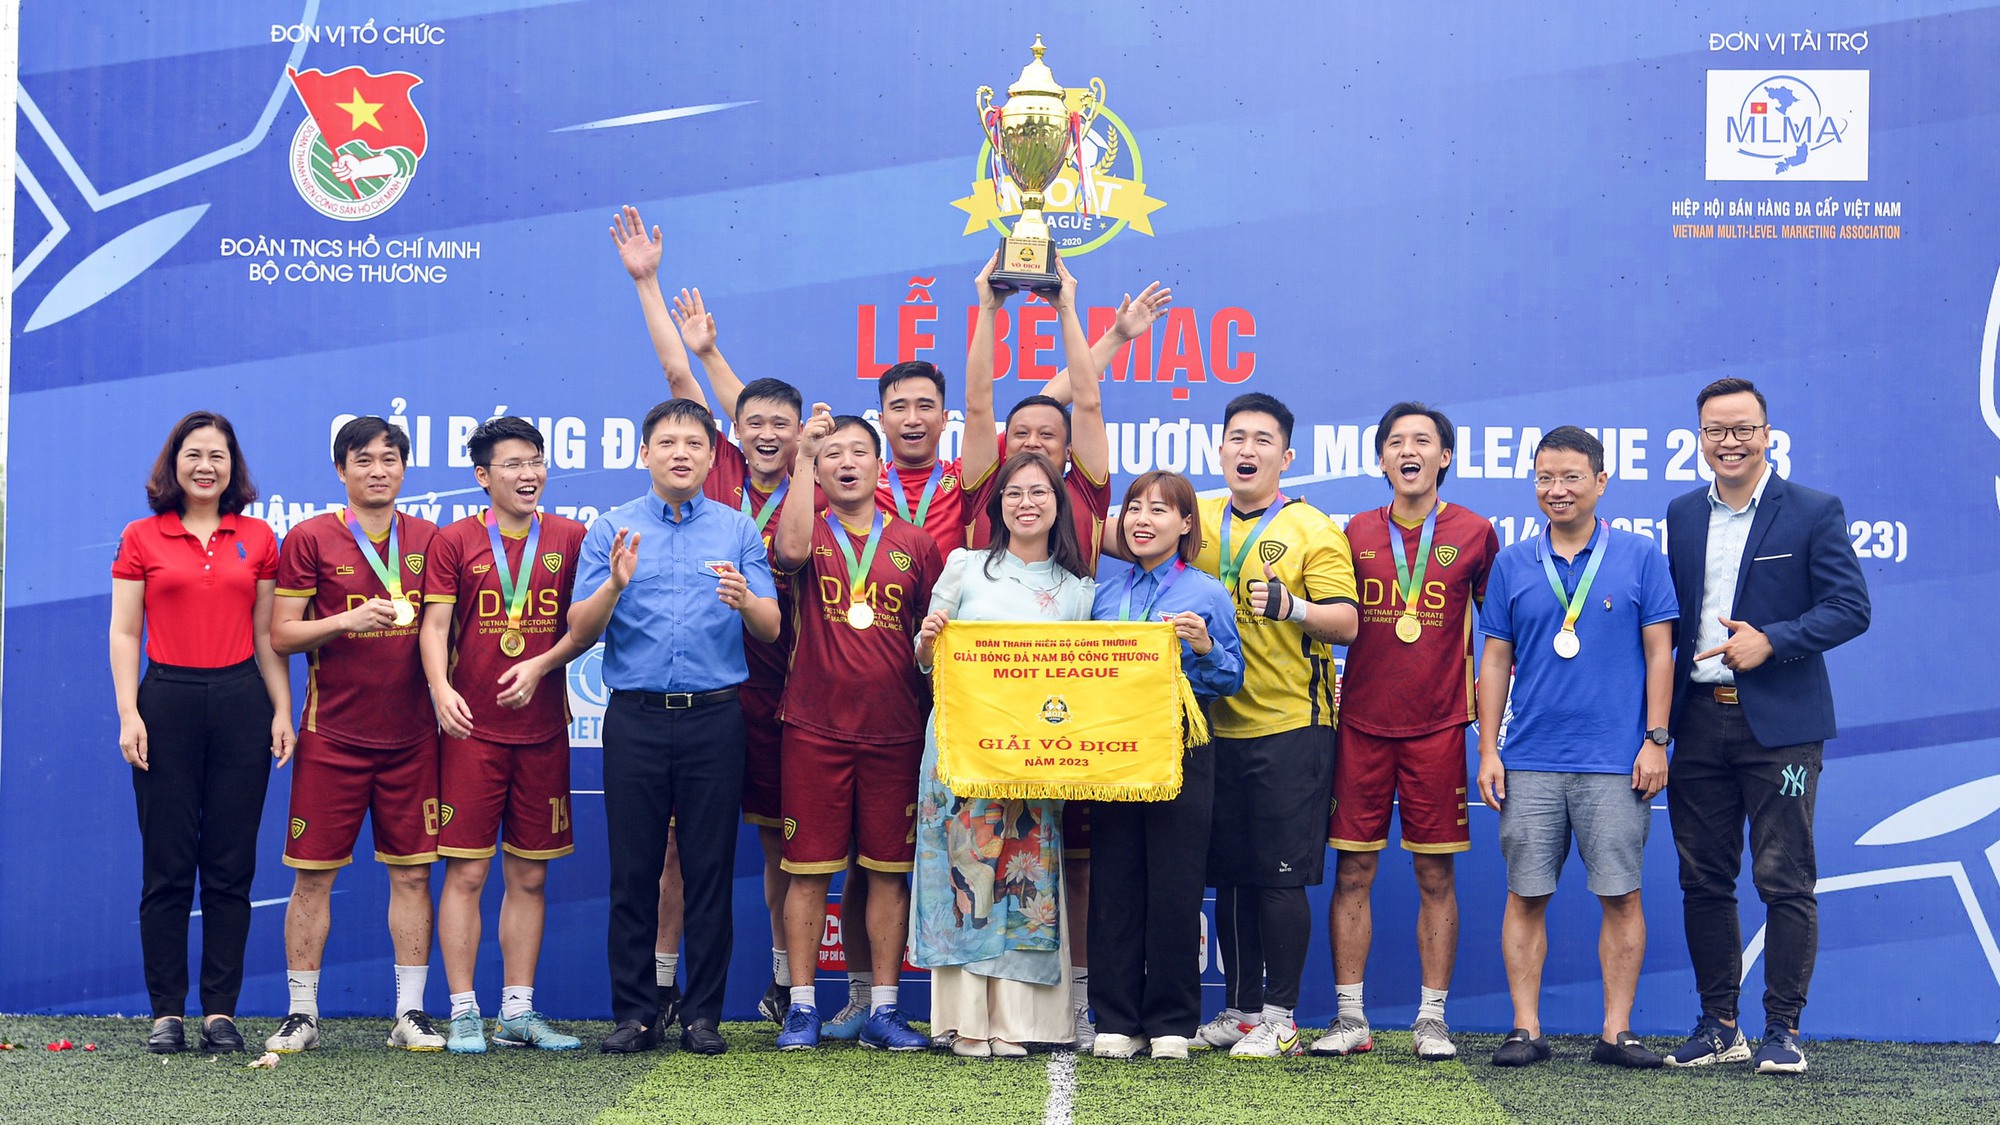 Quản lý thị trường sẽ đá giao hữu với Đội bóng các tuyển thủ Quốc gia Việt Nam - Ảnh 2.